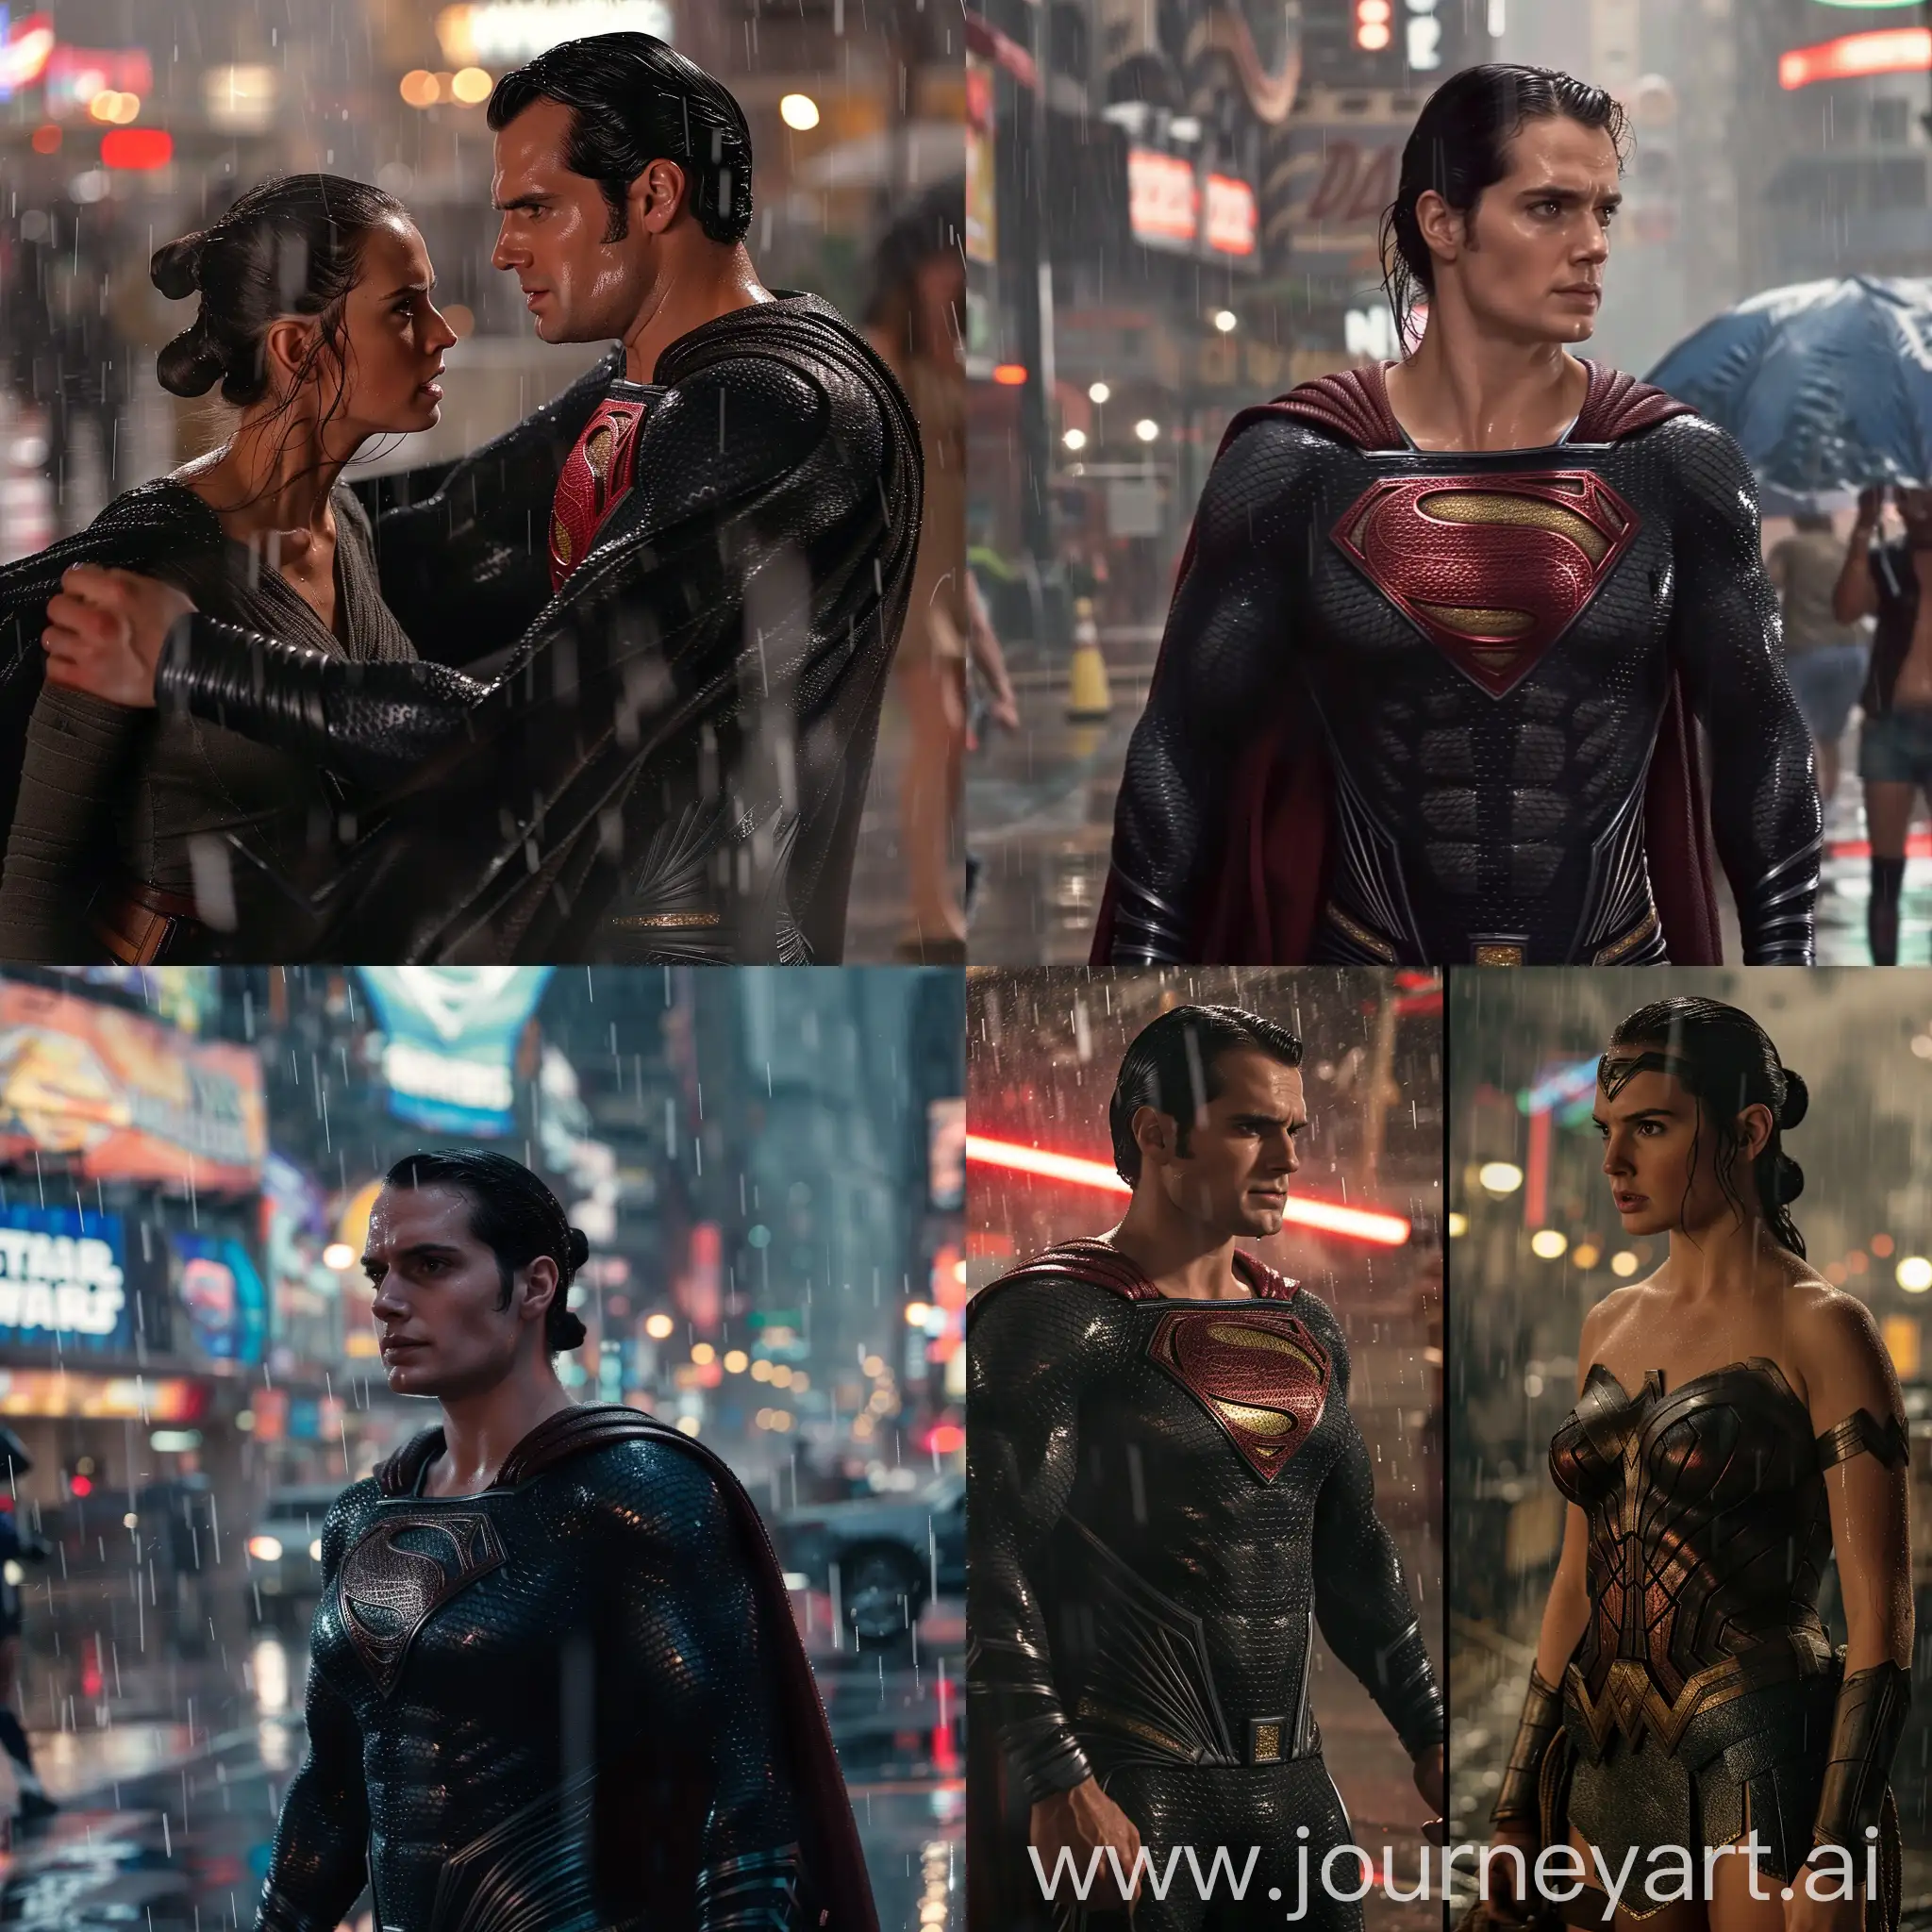 Rey-Skywalker-in-Black-Kryptonian-Costume-Faora-Tribute-in-Cyberpunk-City-Rain